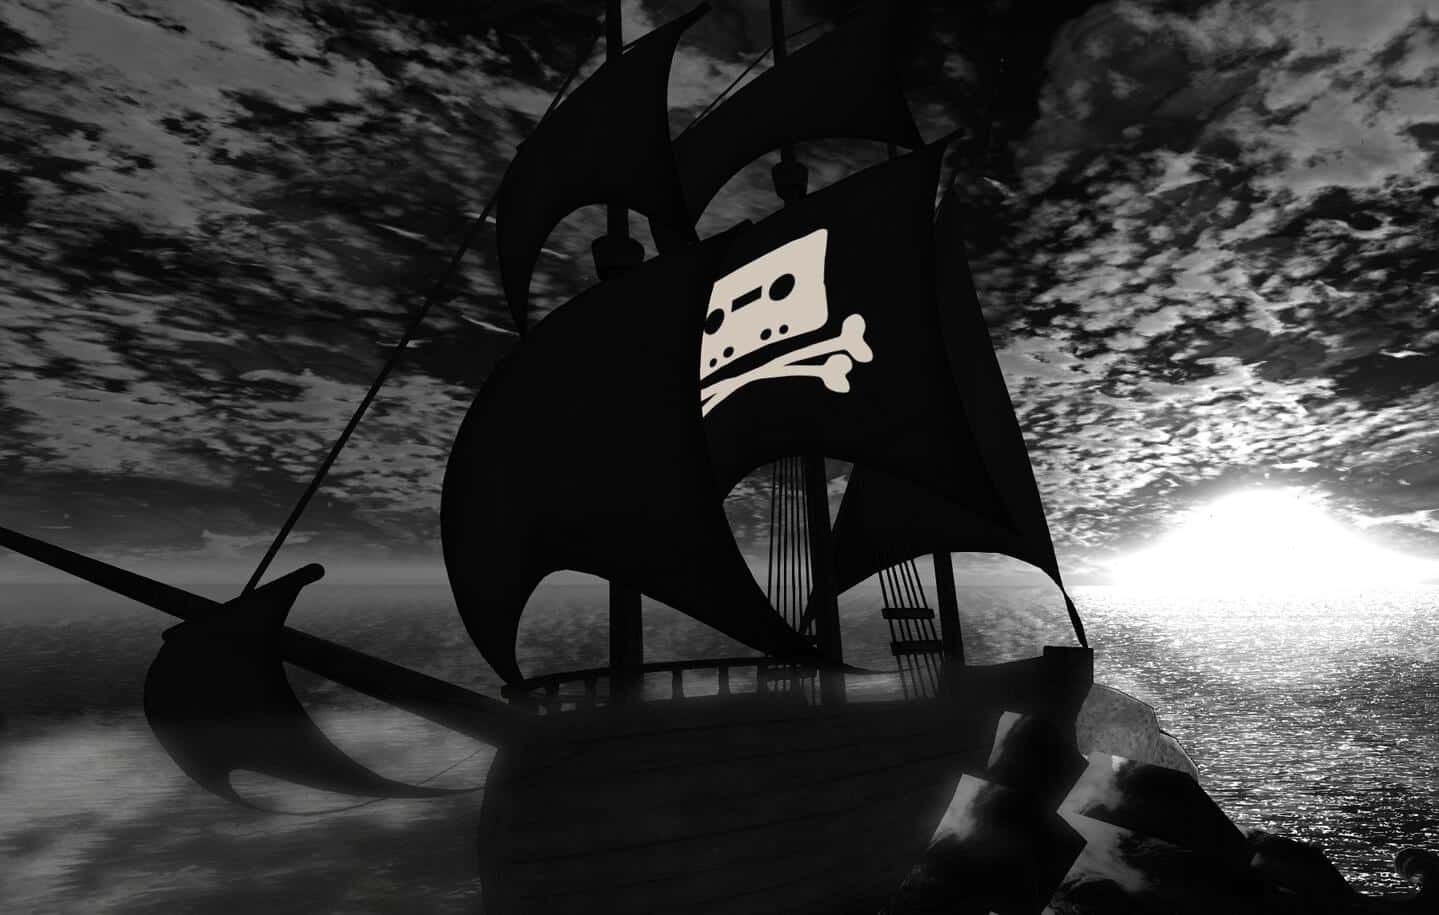 The Pirate Bay perde recurso para manter domínios '.se